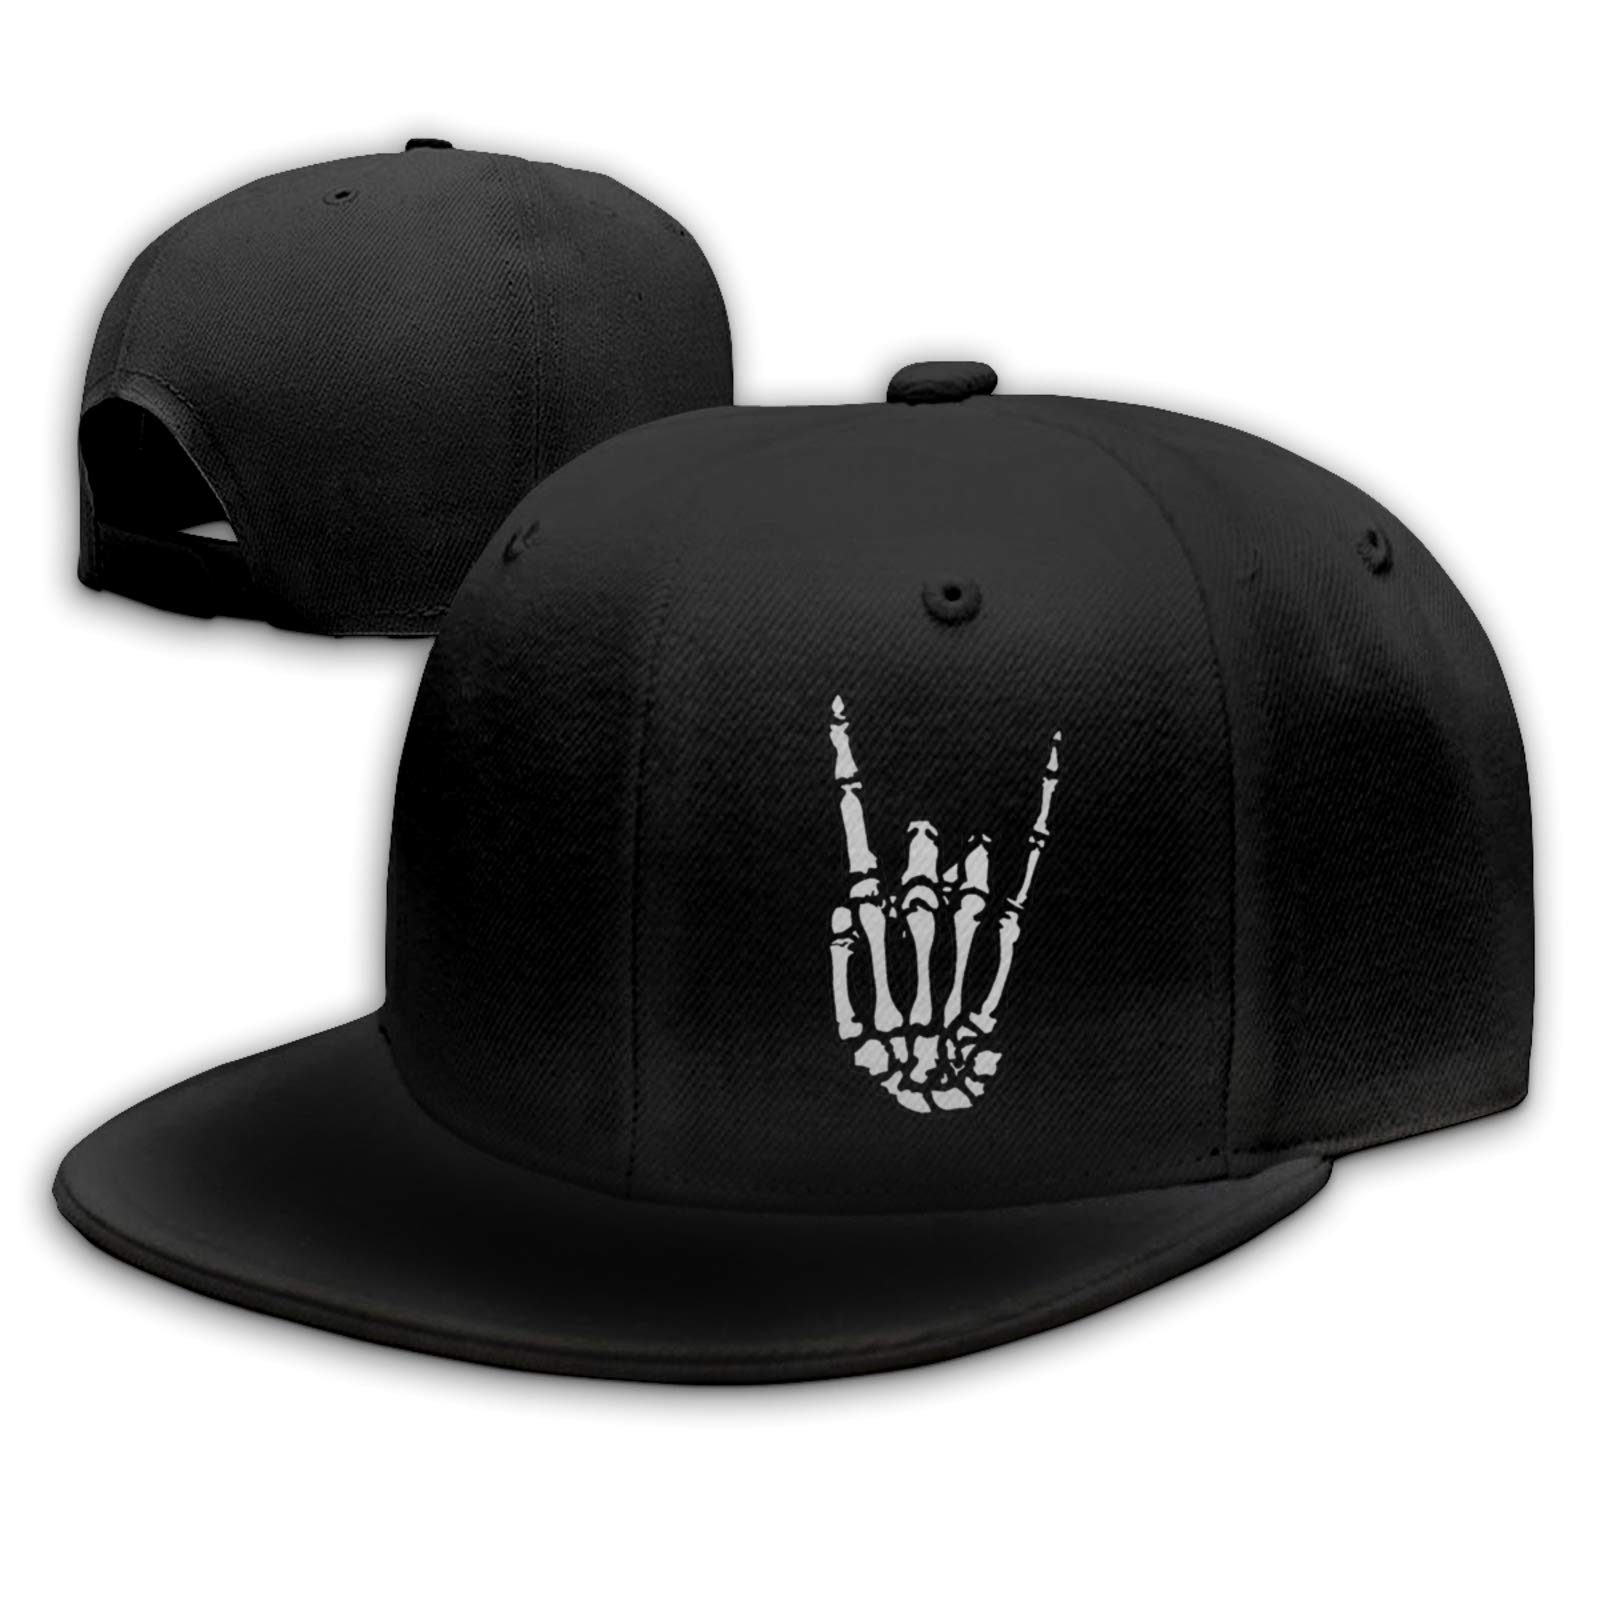 Negi Flat Bill Hats Snapback Hat Brim Baseball Cap for Men Adjustable  Black65 2